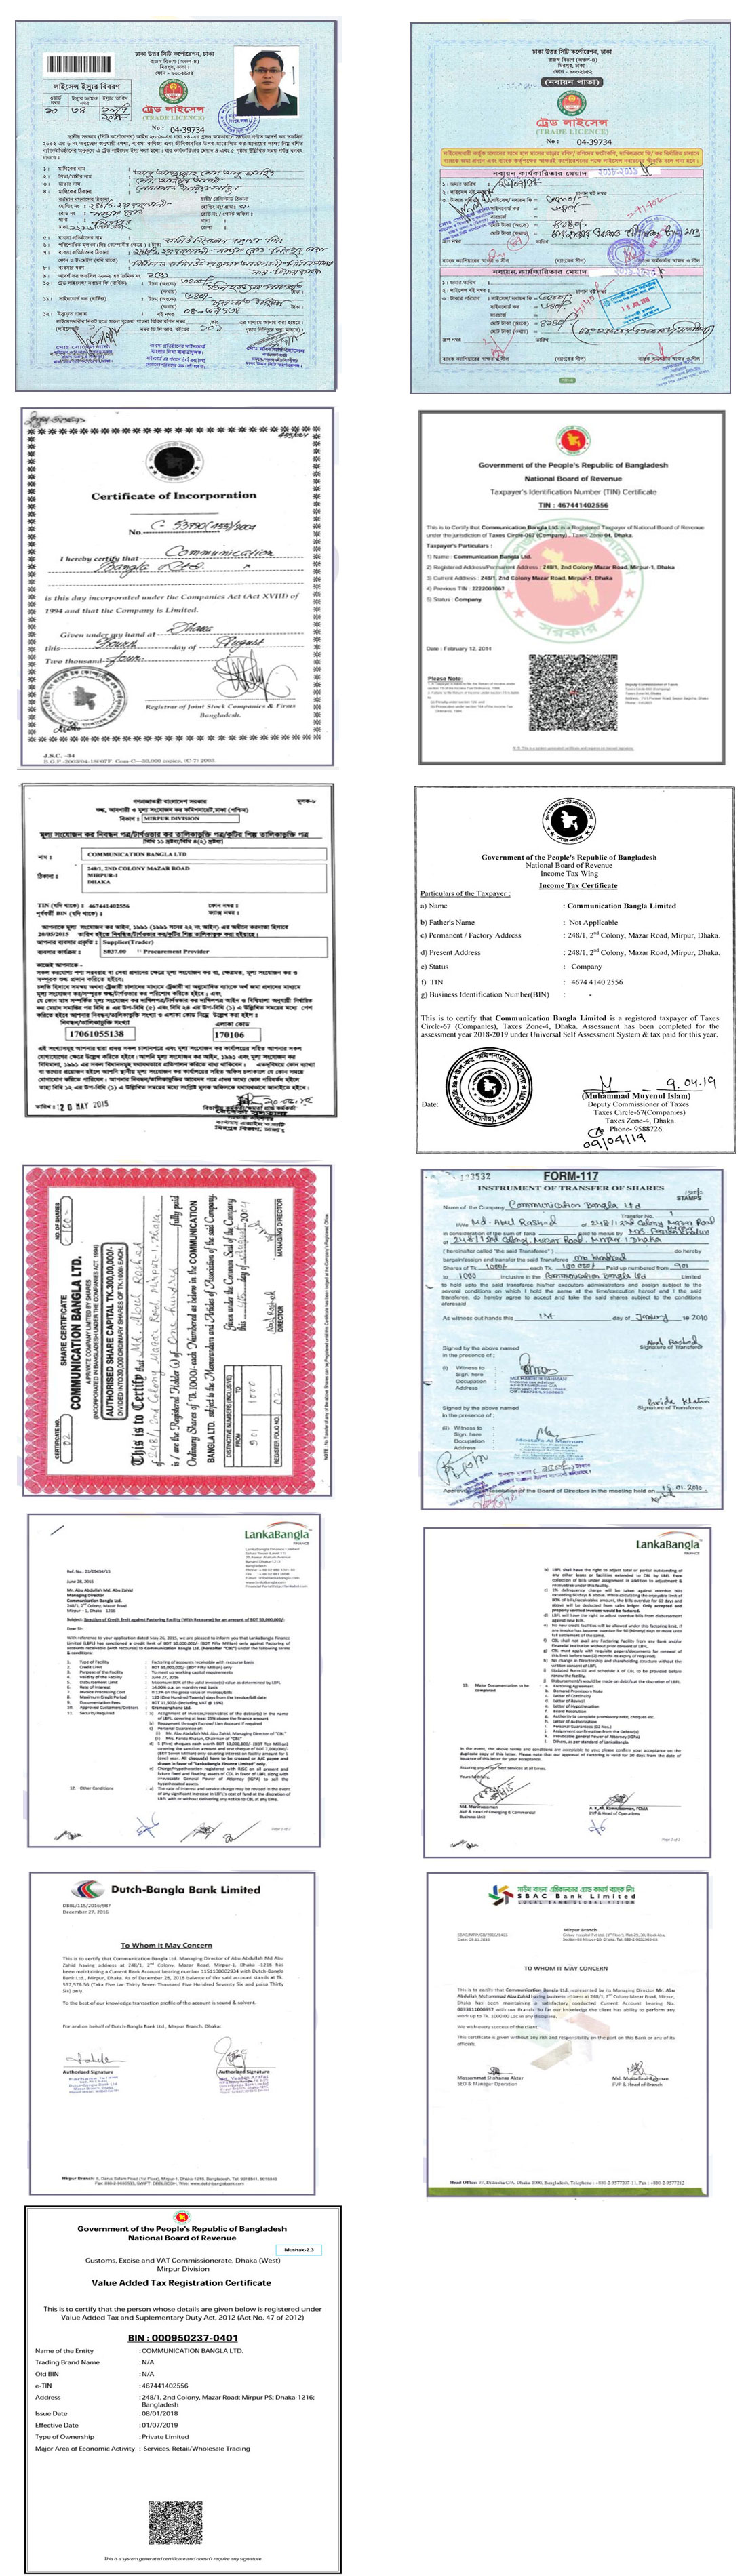 legal-documents-communication-bangla-ltd